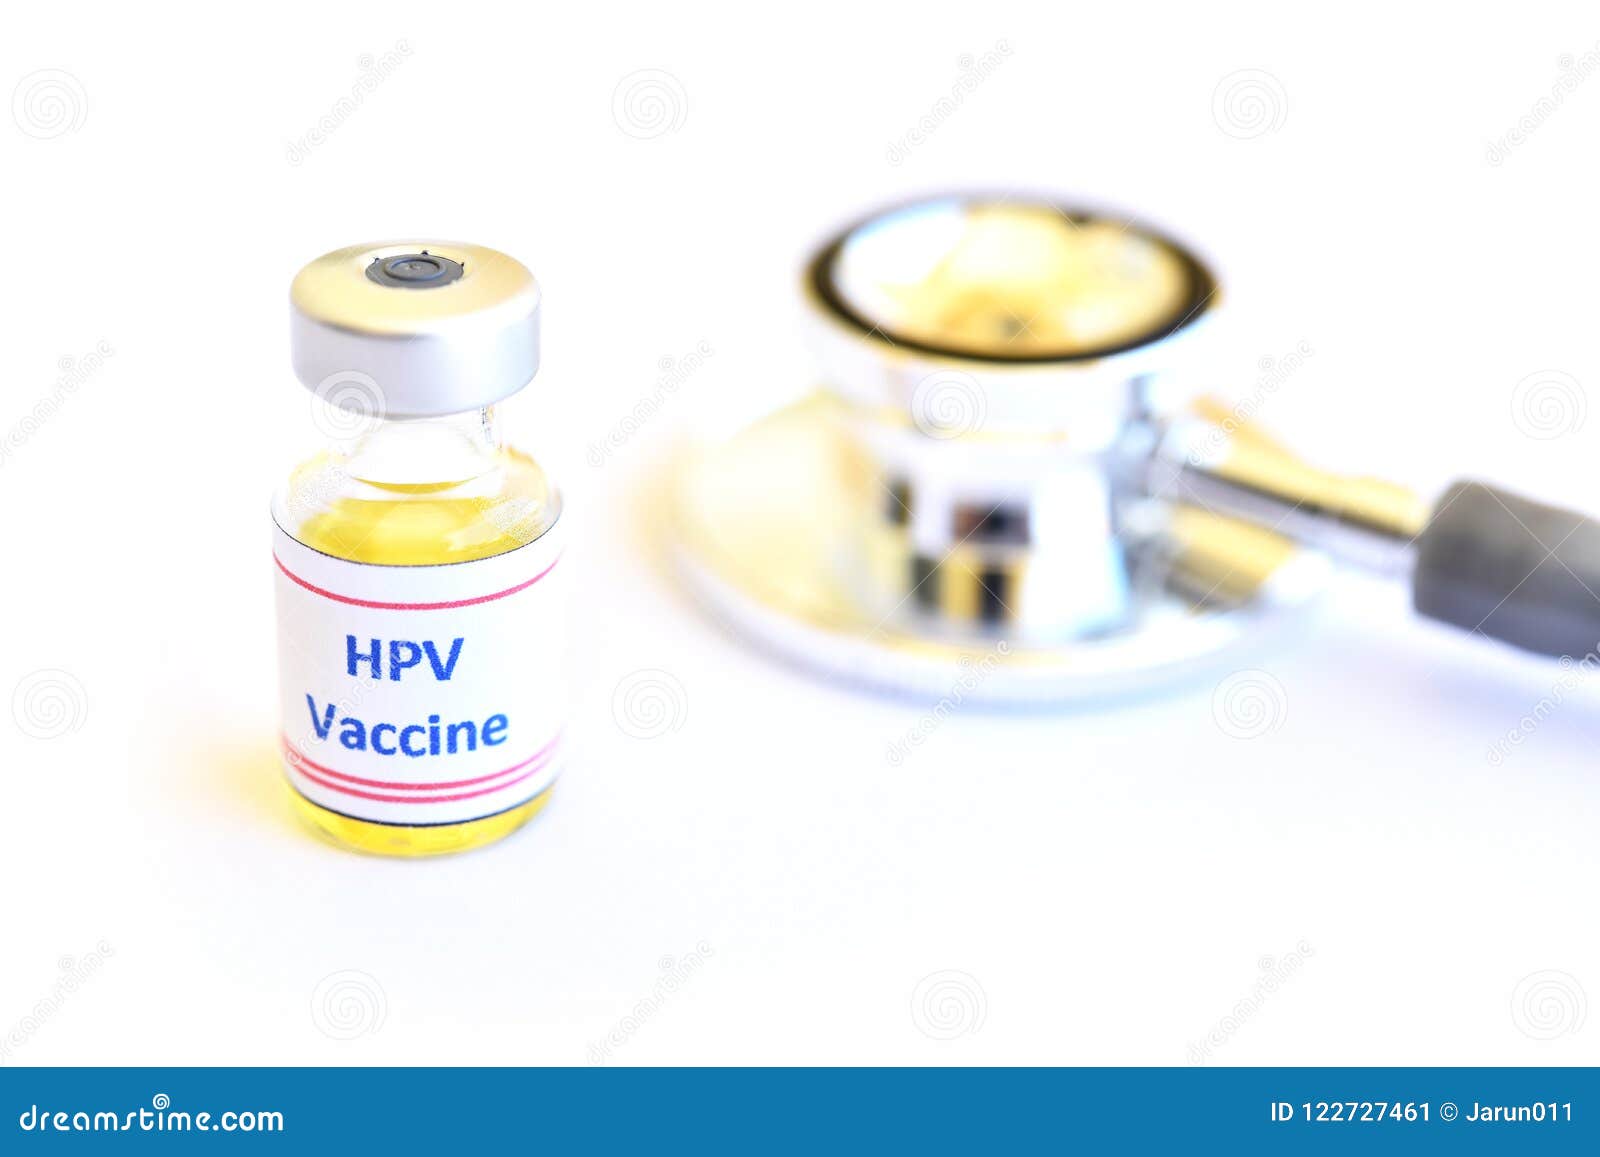 injection human papillomavirus vaccine)